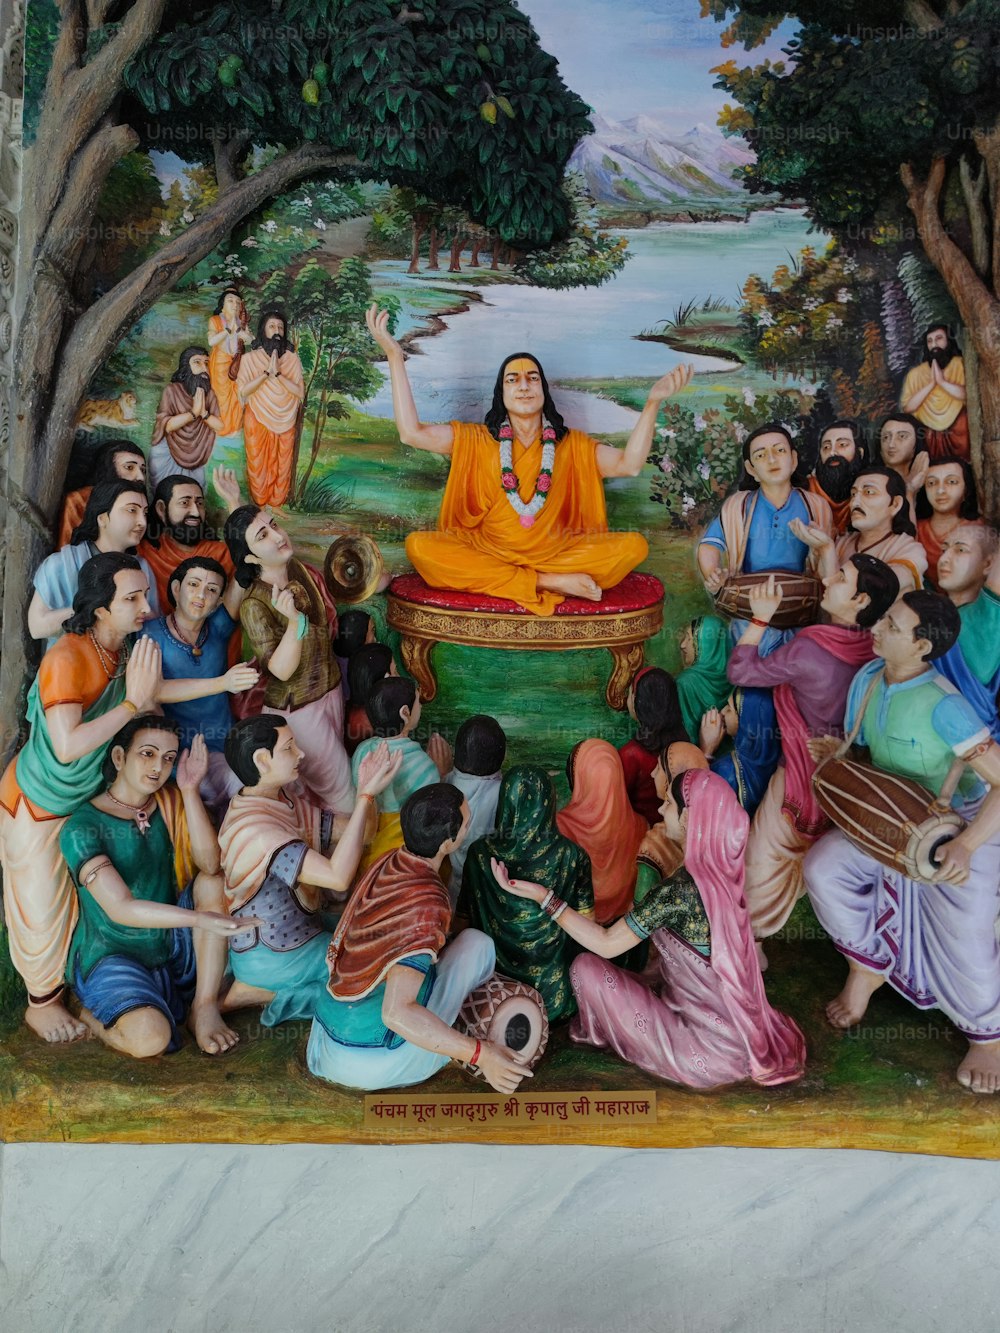 Ein Gemälde einer Frau, die vor einer Gruppe von Menschen sitzt